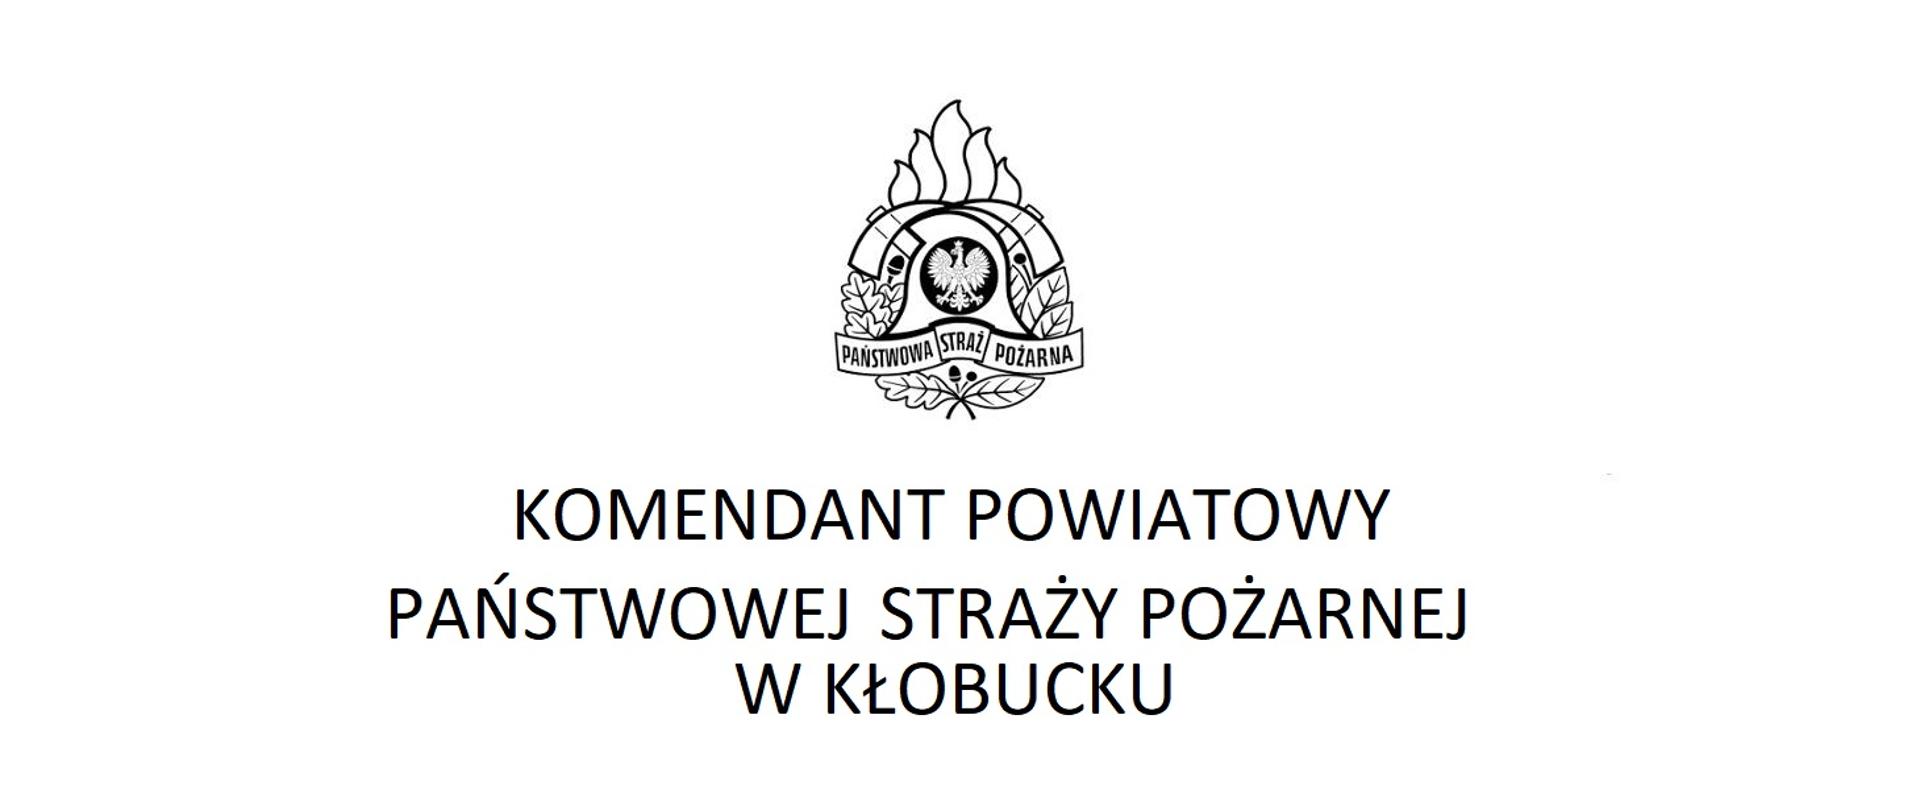 Zdjęcie przedstawia logo Komendanta Powiatowego PSP w Kłobucku